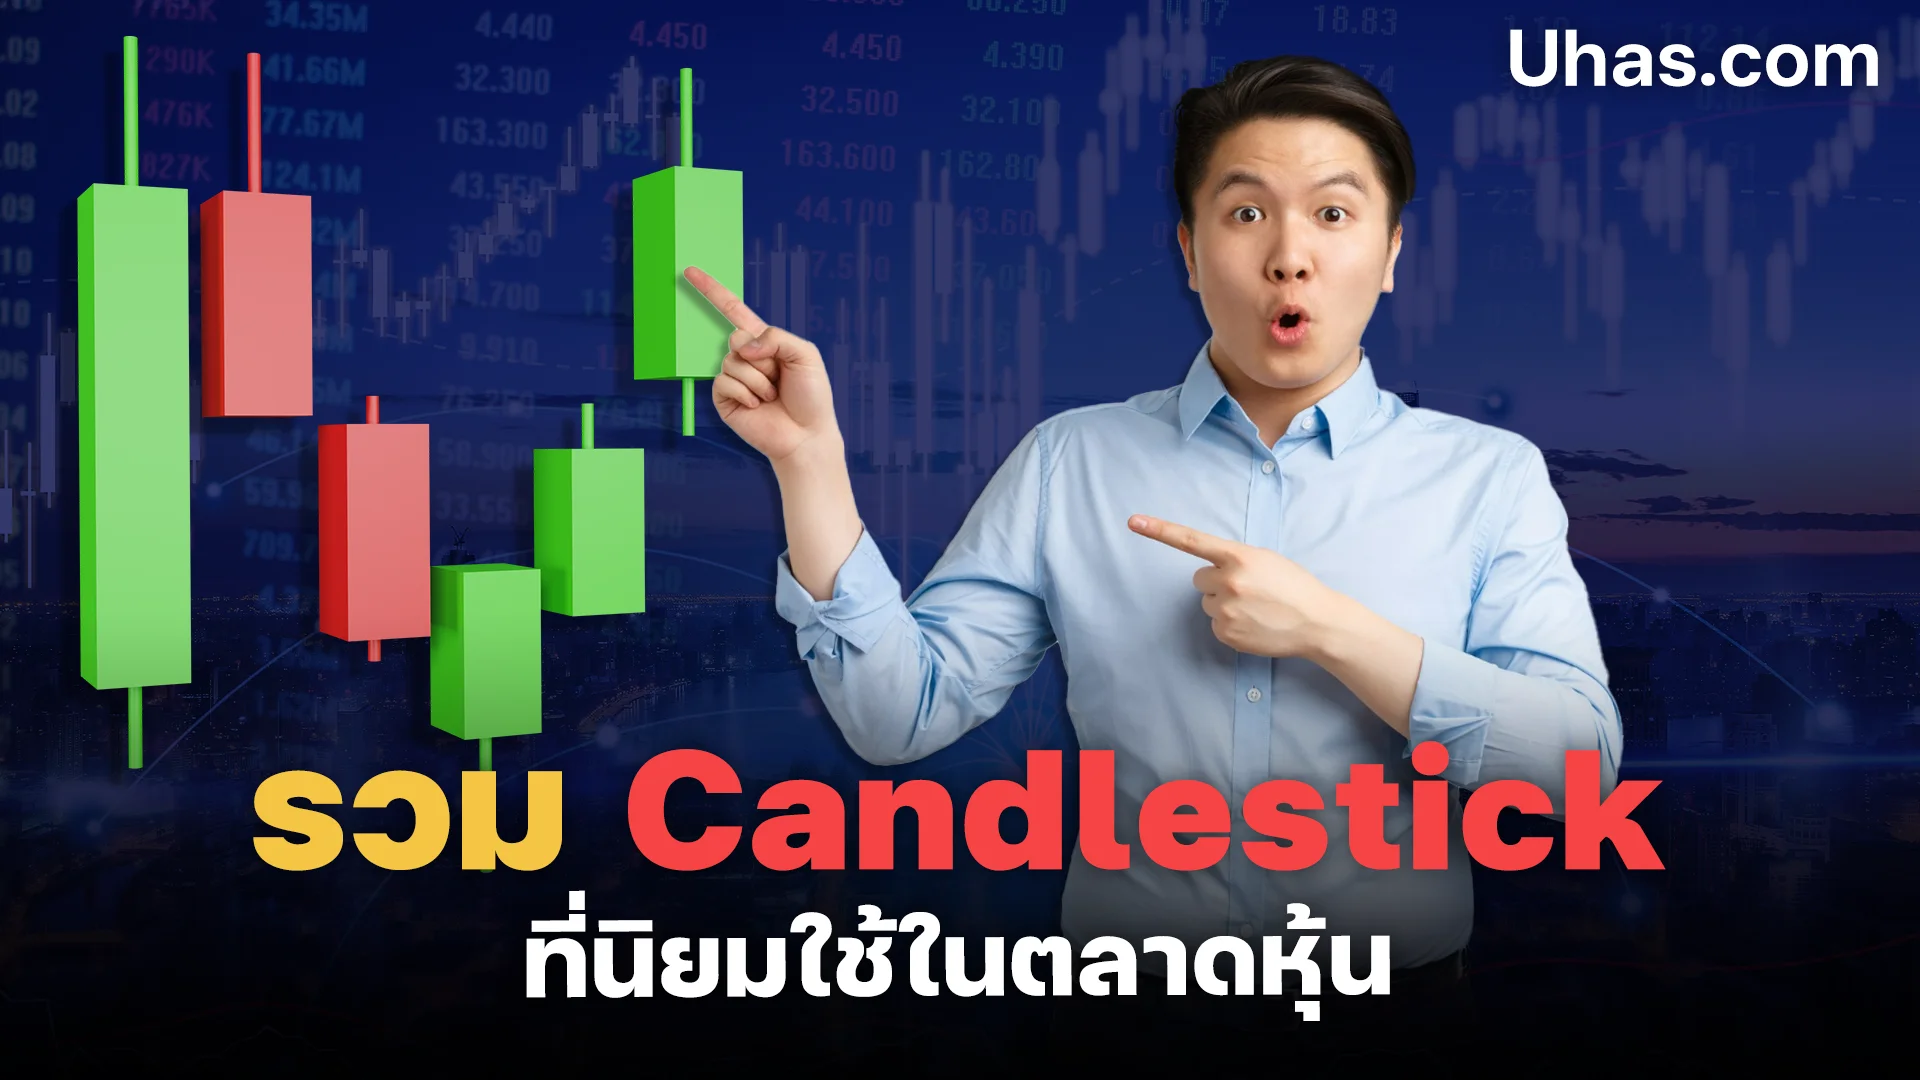 Candlestick 10 รูปแบบ ที่นิยมใช้กันในตลาดหุ้น